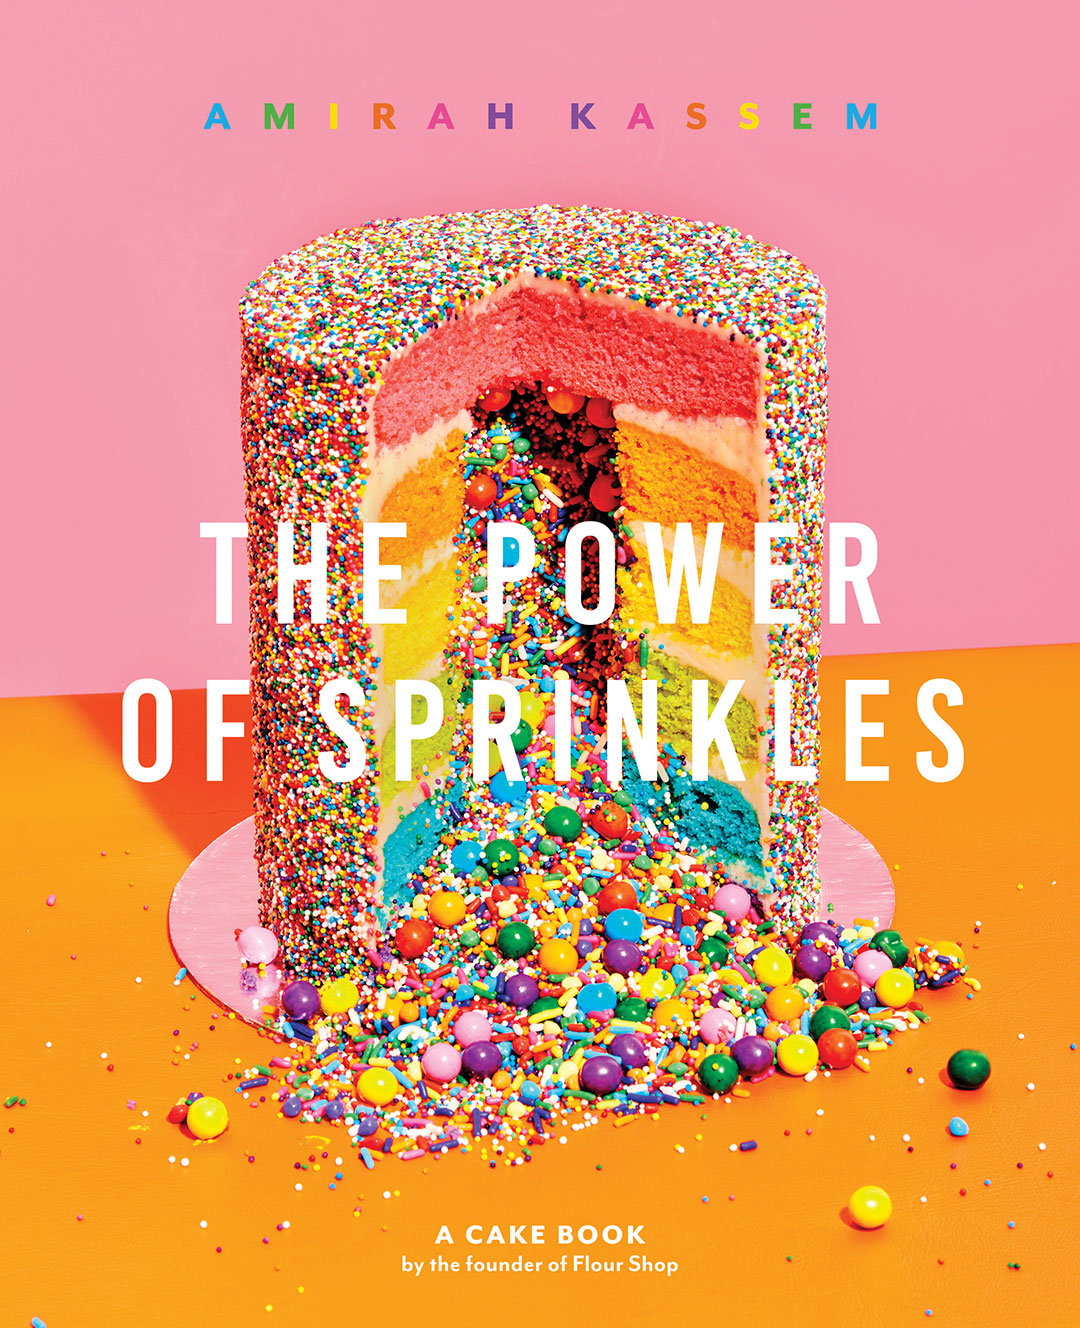 The Power of Sprinkles by Amirah Kassem